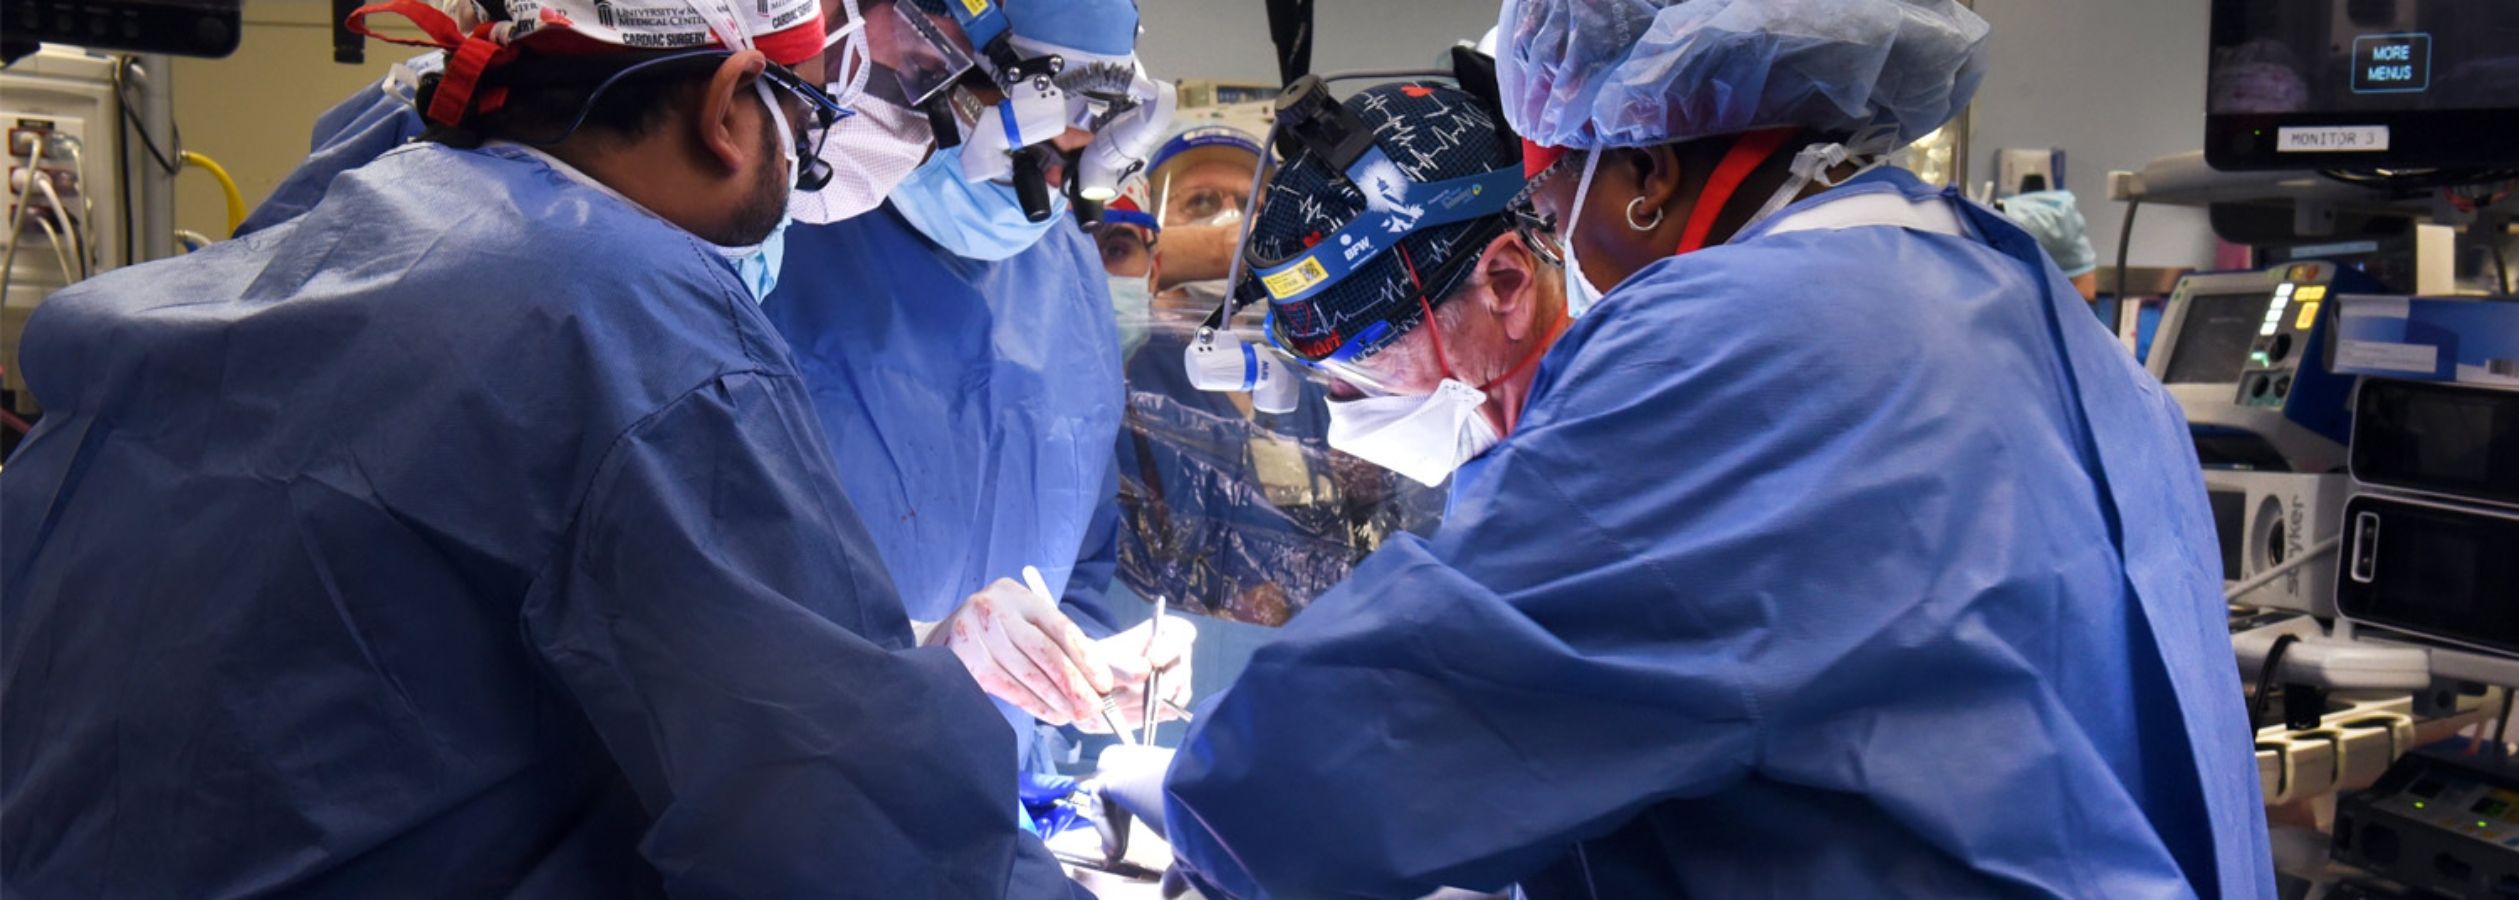 Realizado el primer trasplante de corazón de cerdo a un humano: “Era morir o hacerlo"